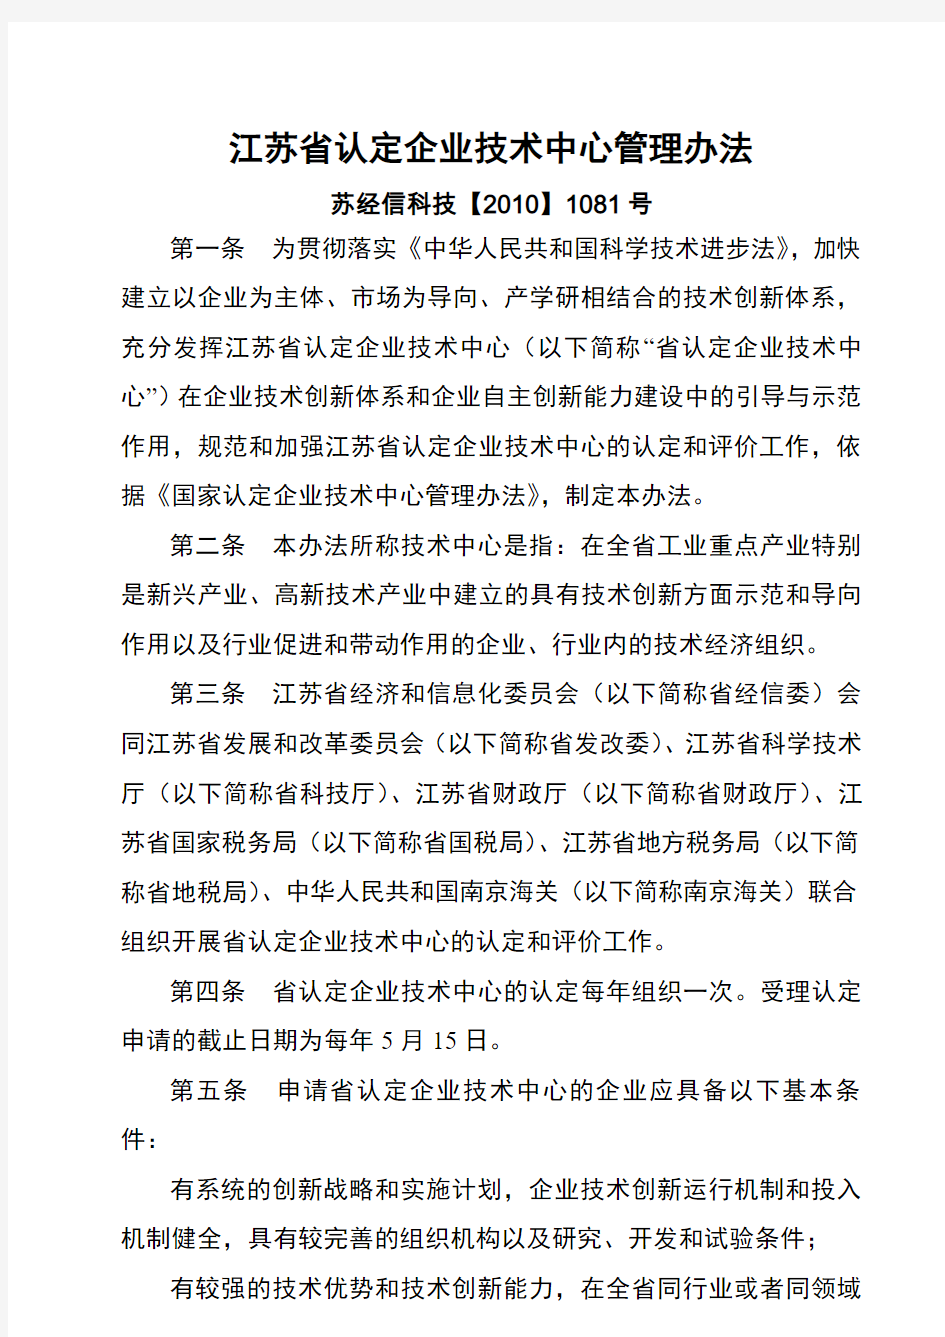 江苏省认定企业技术中心管理办法版